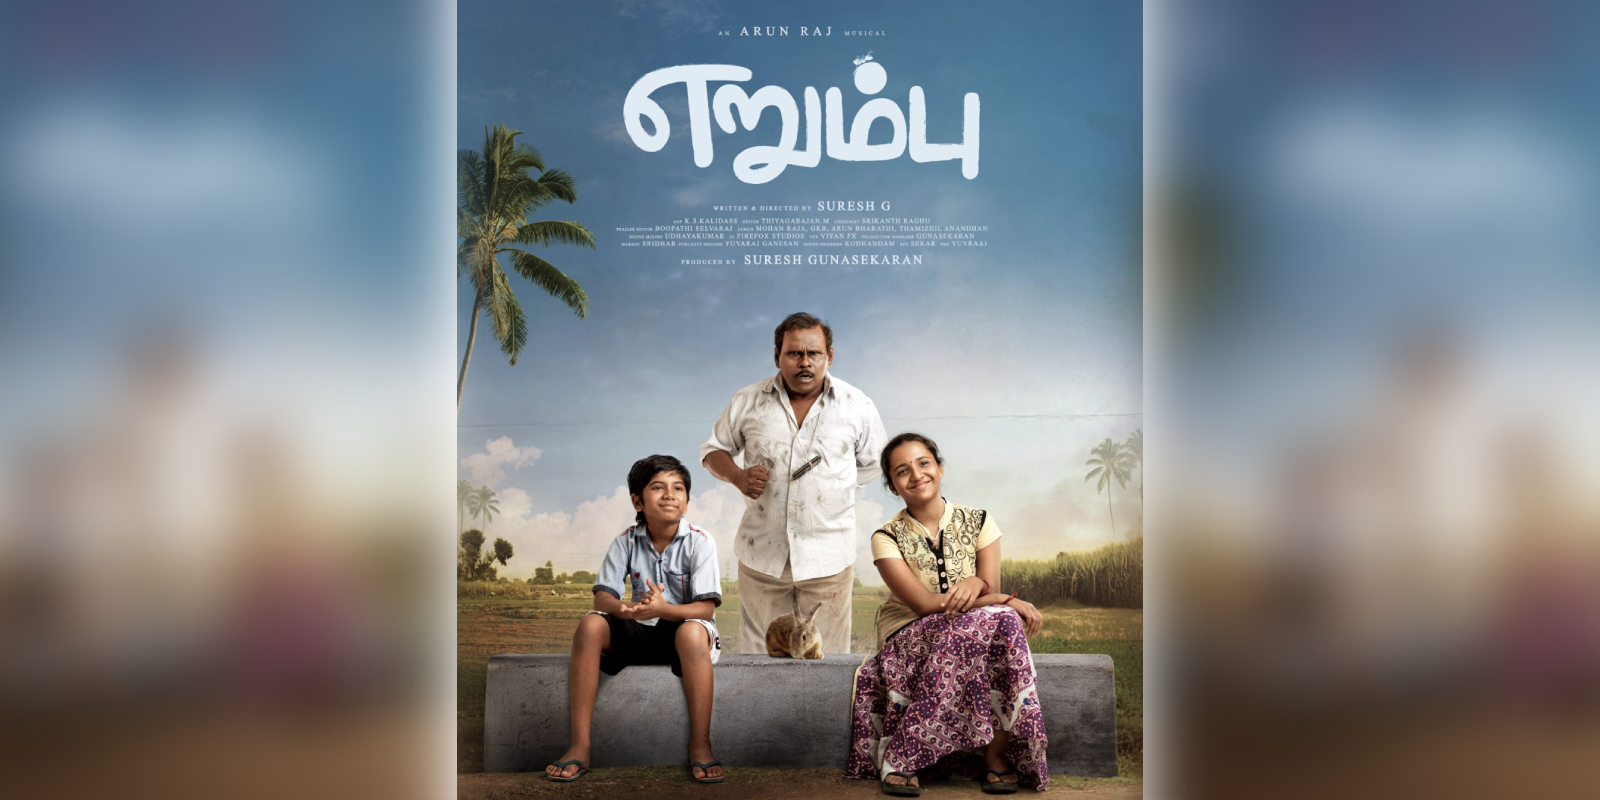 erumbu tamil movie review in tamil